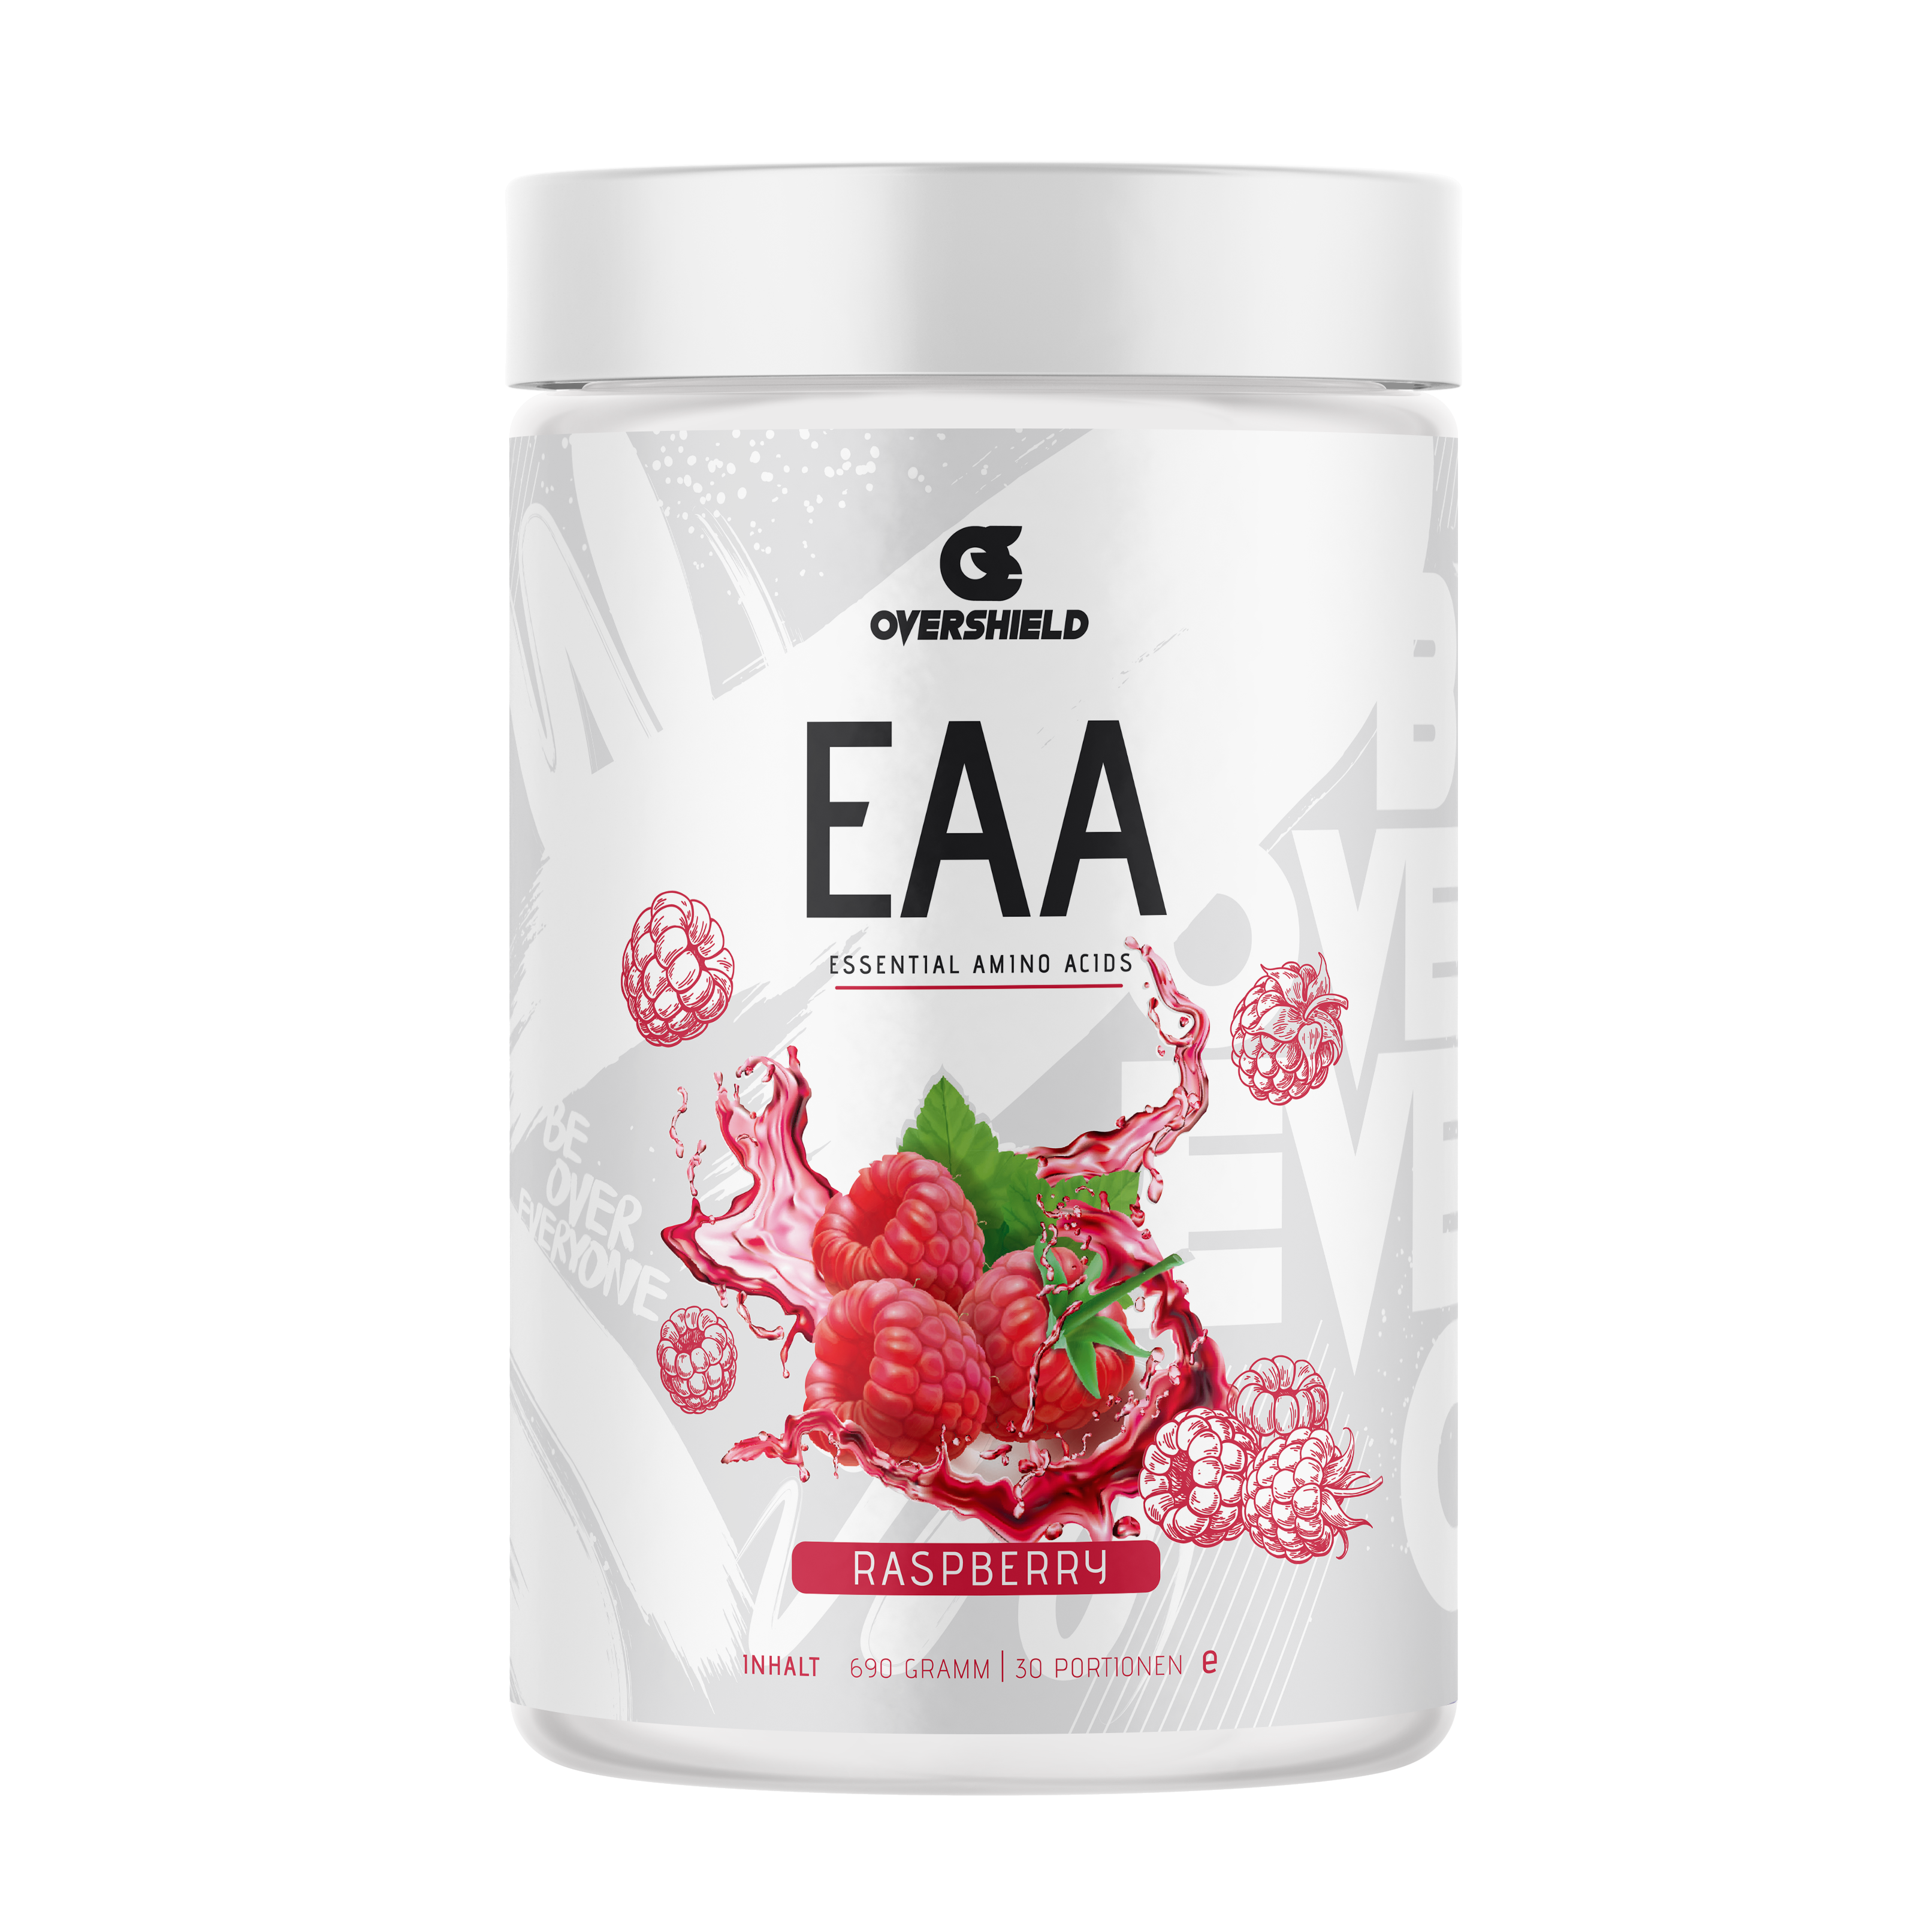 Raspberry EAA Aminosäuren in weißer Dose von Overshield. Der Inhalt entspricht 33 Portionen. Himbeeren.